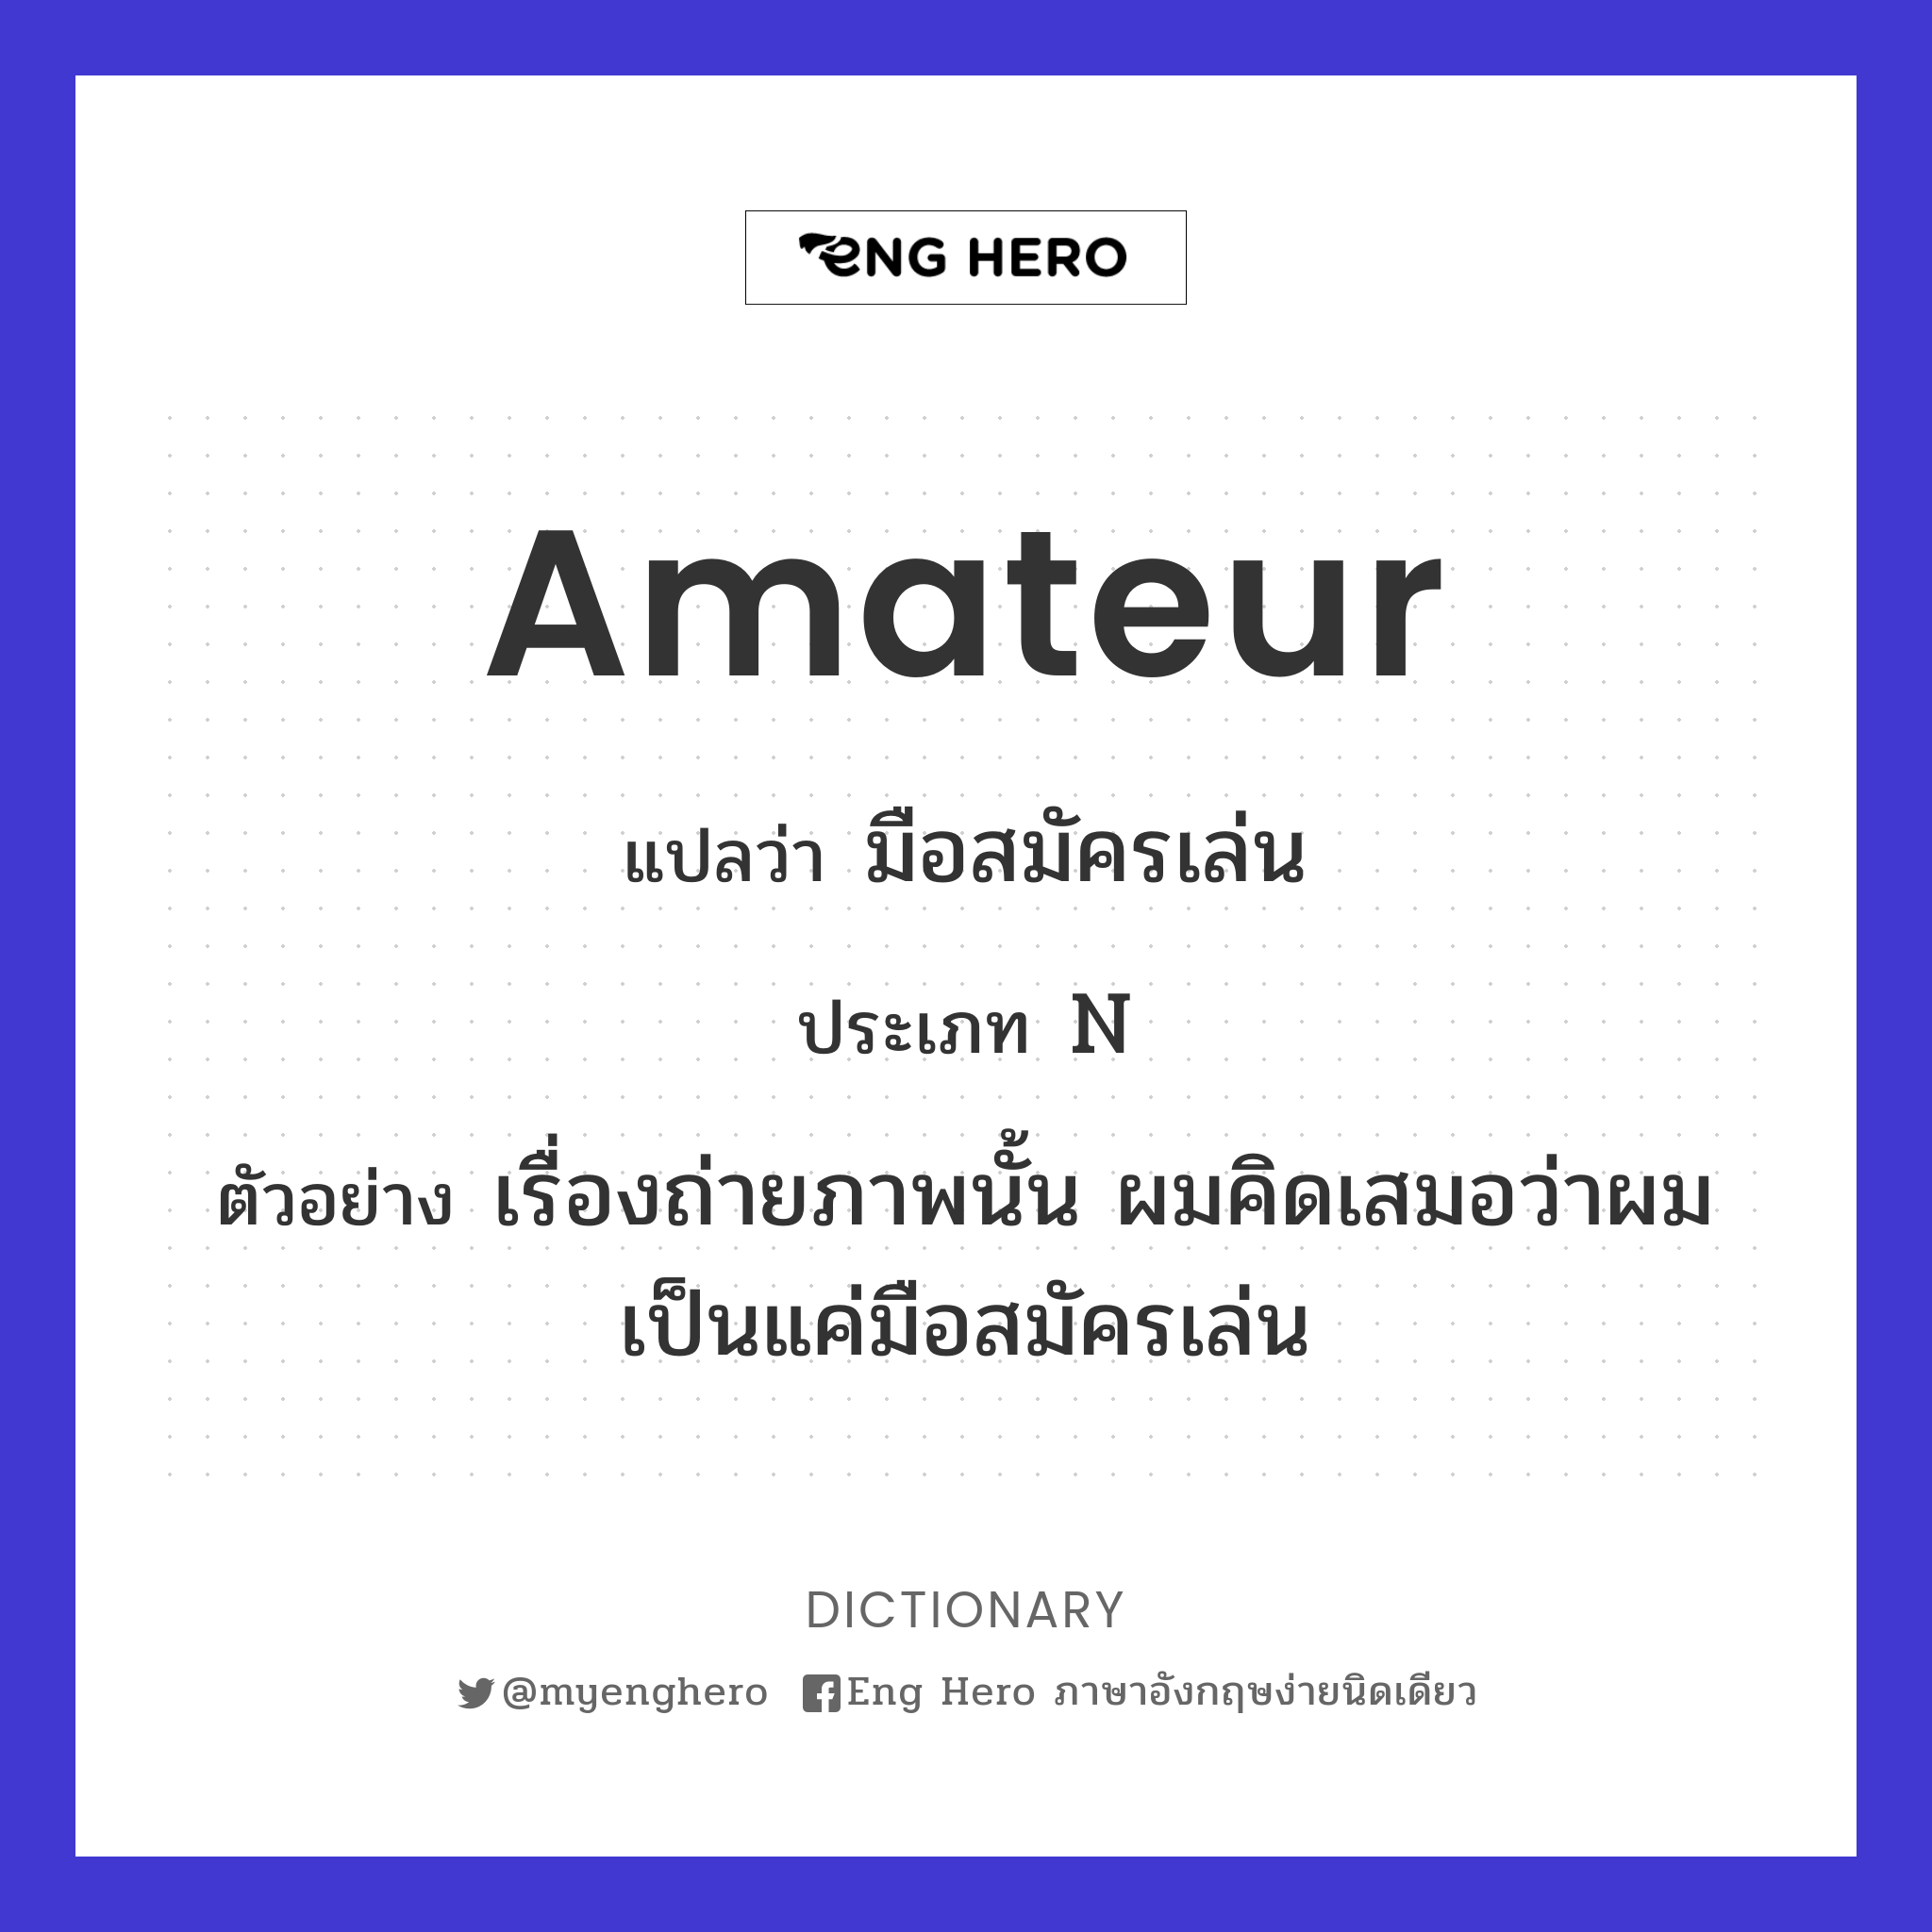 amateur